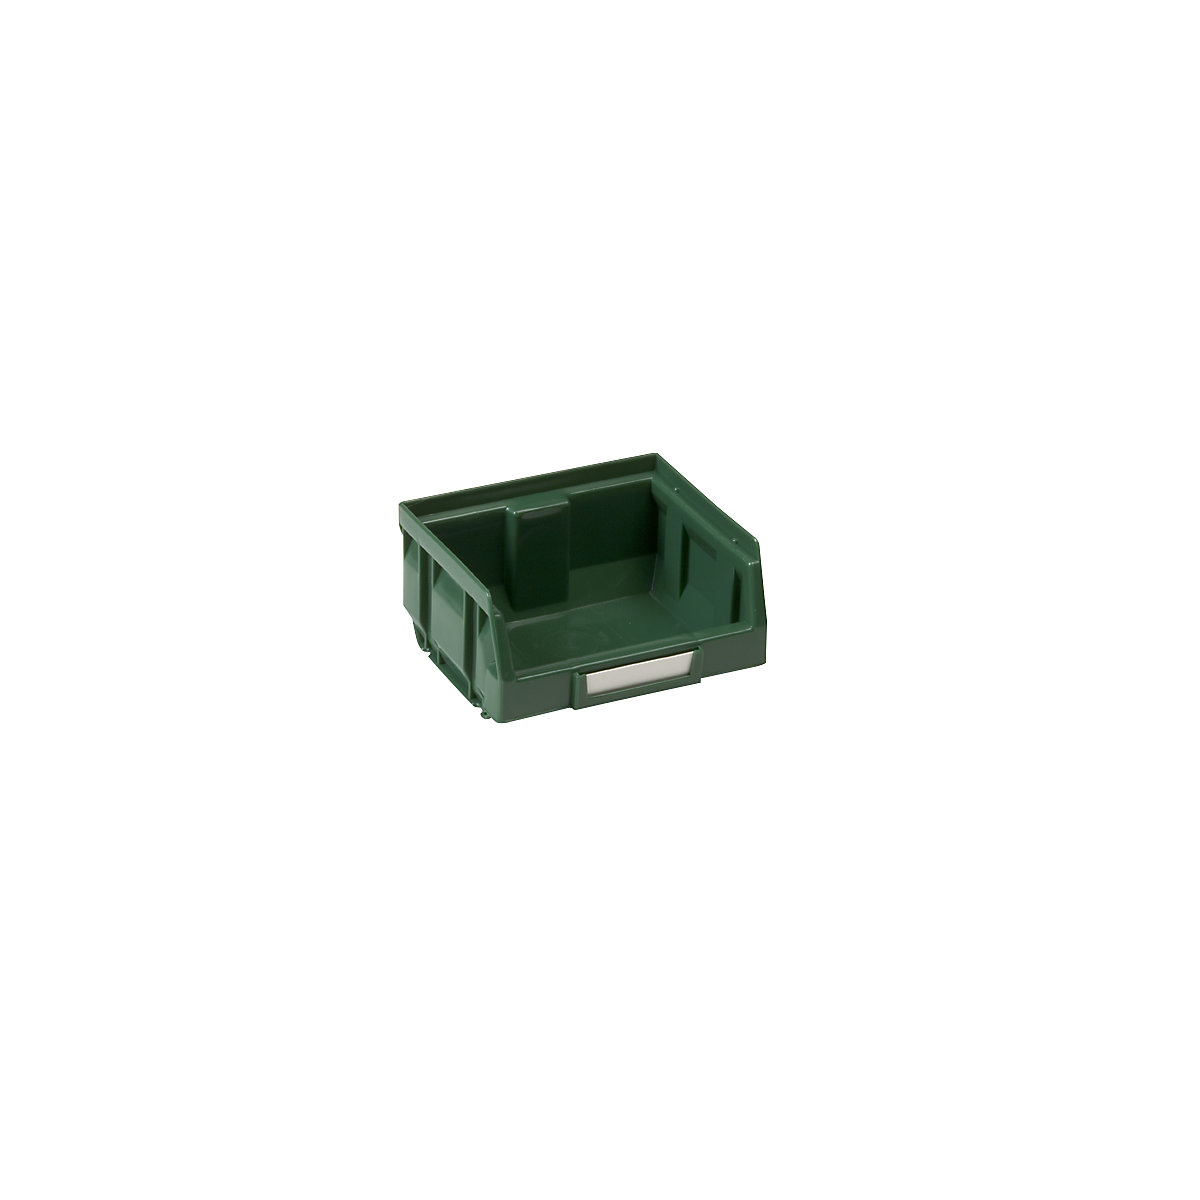 Caixa de armazenagem à vista em polietileno, CxLxA 88 x 105 x 54 mm, verde, embalagem 50 unid.-7